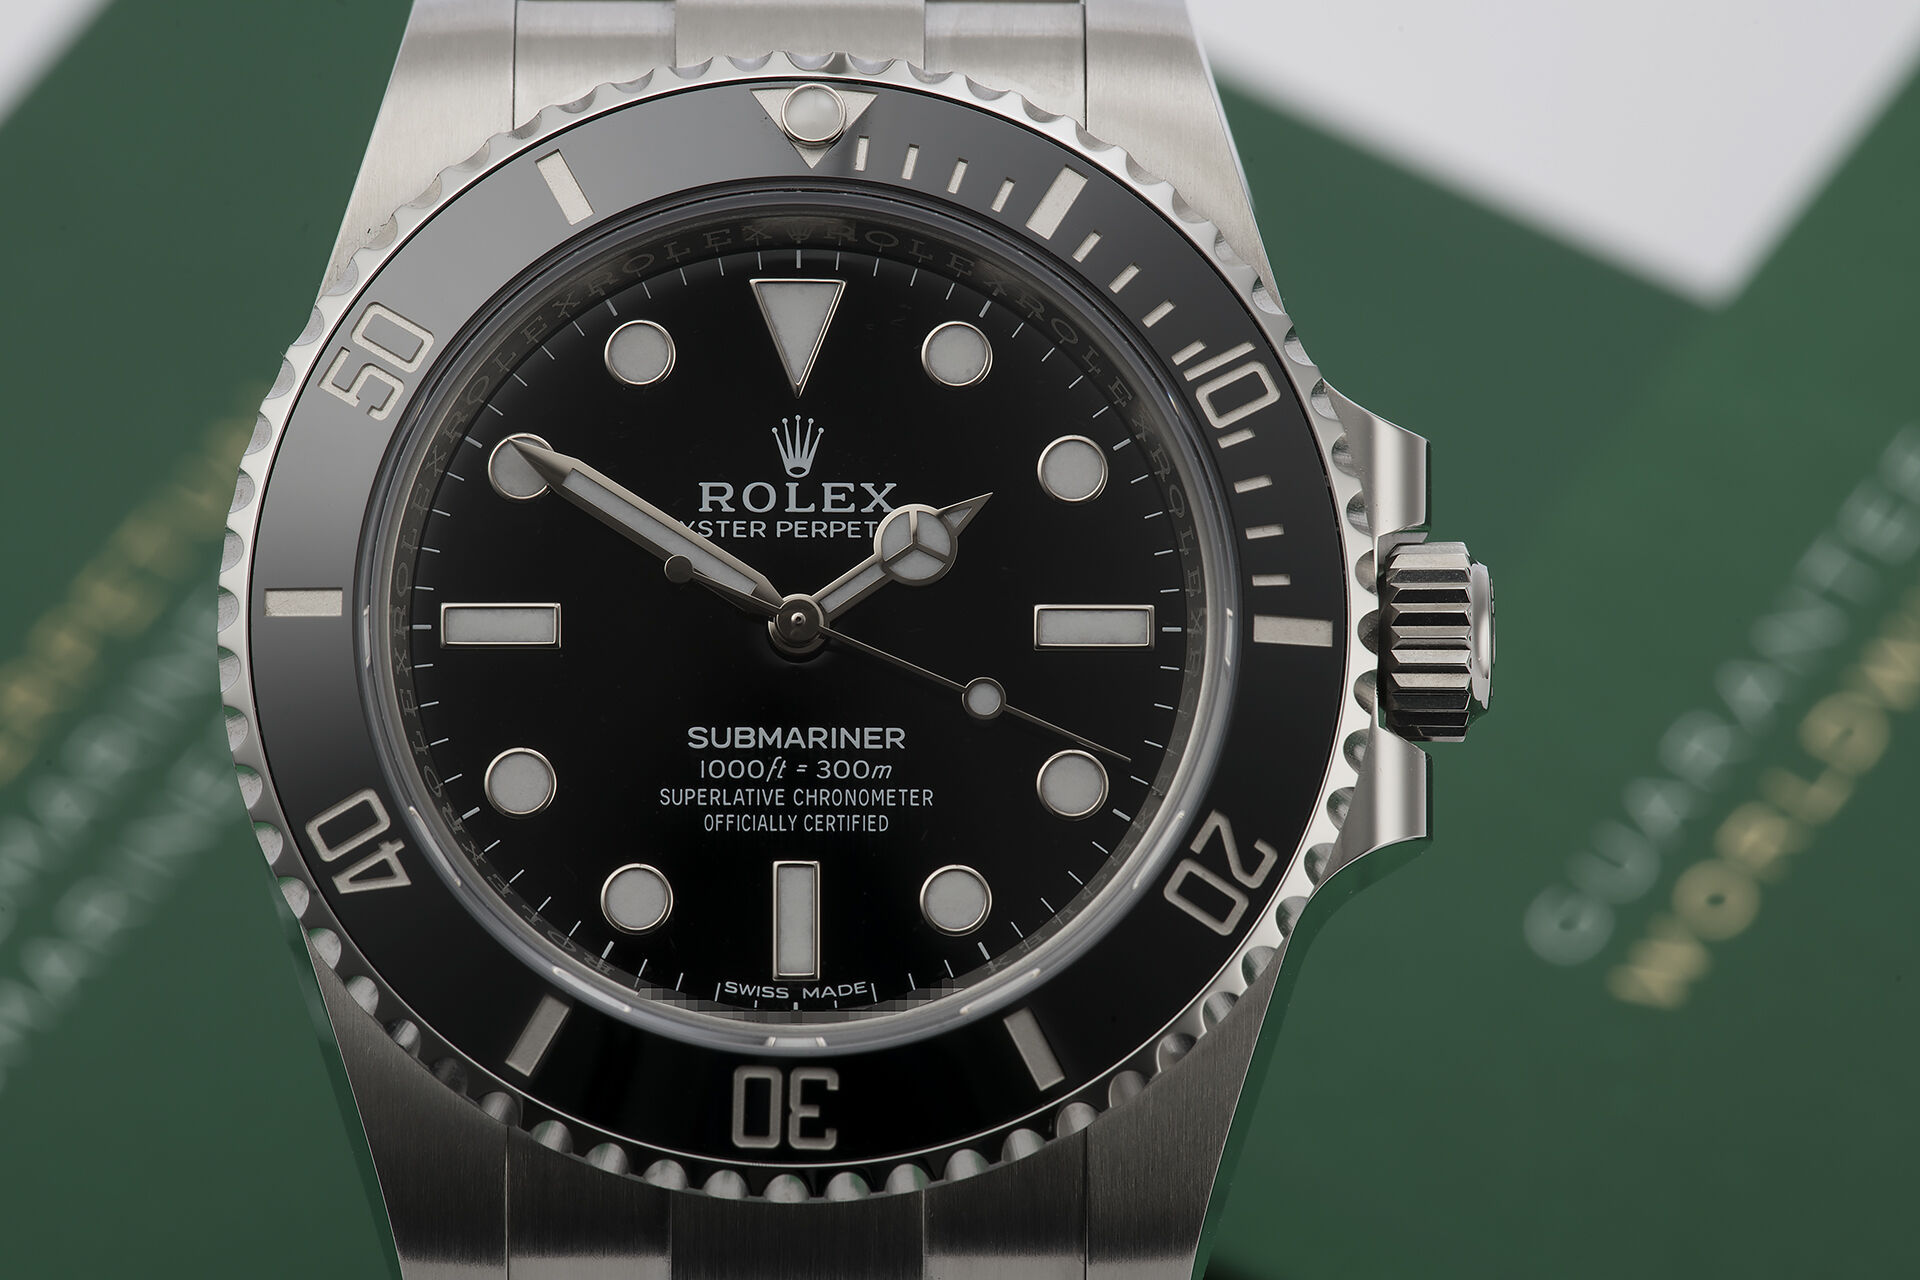 ref 114060 | 5 Year Rolex Warranty | Rolex Submariner 